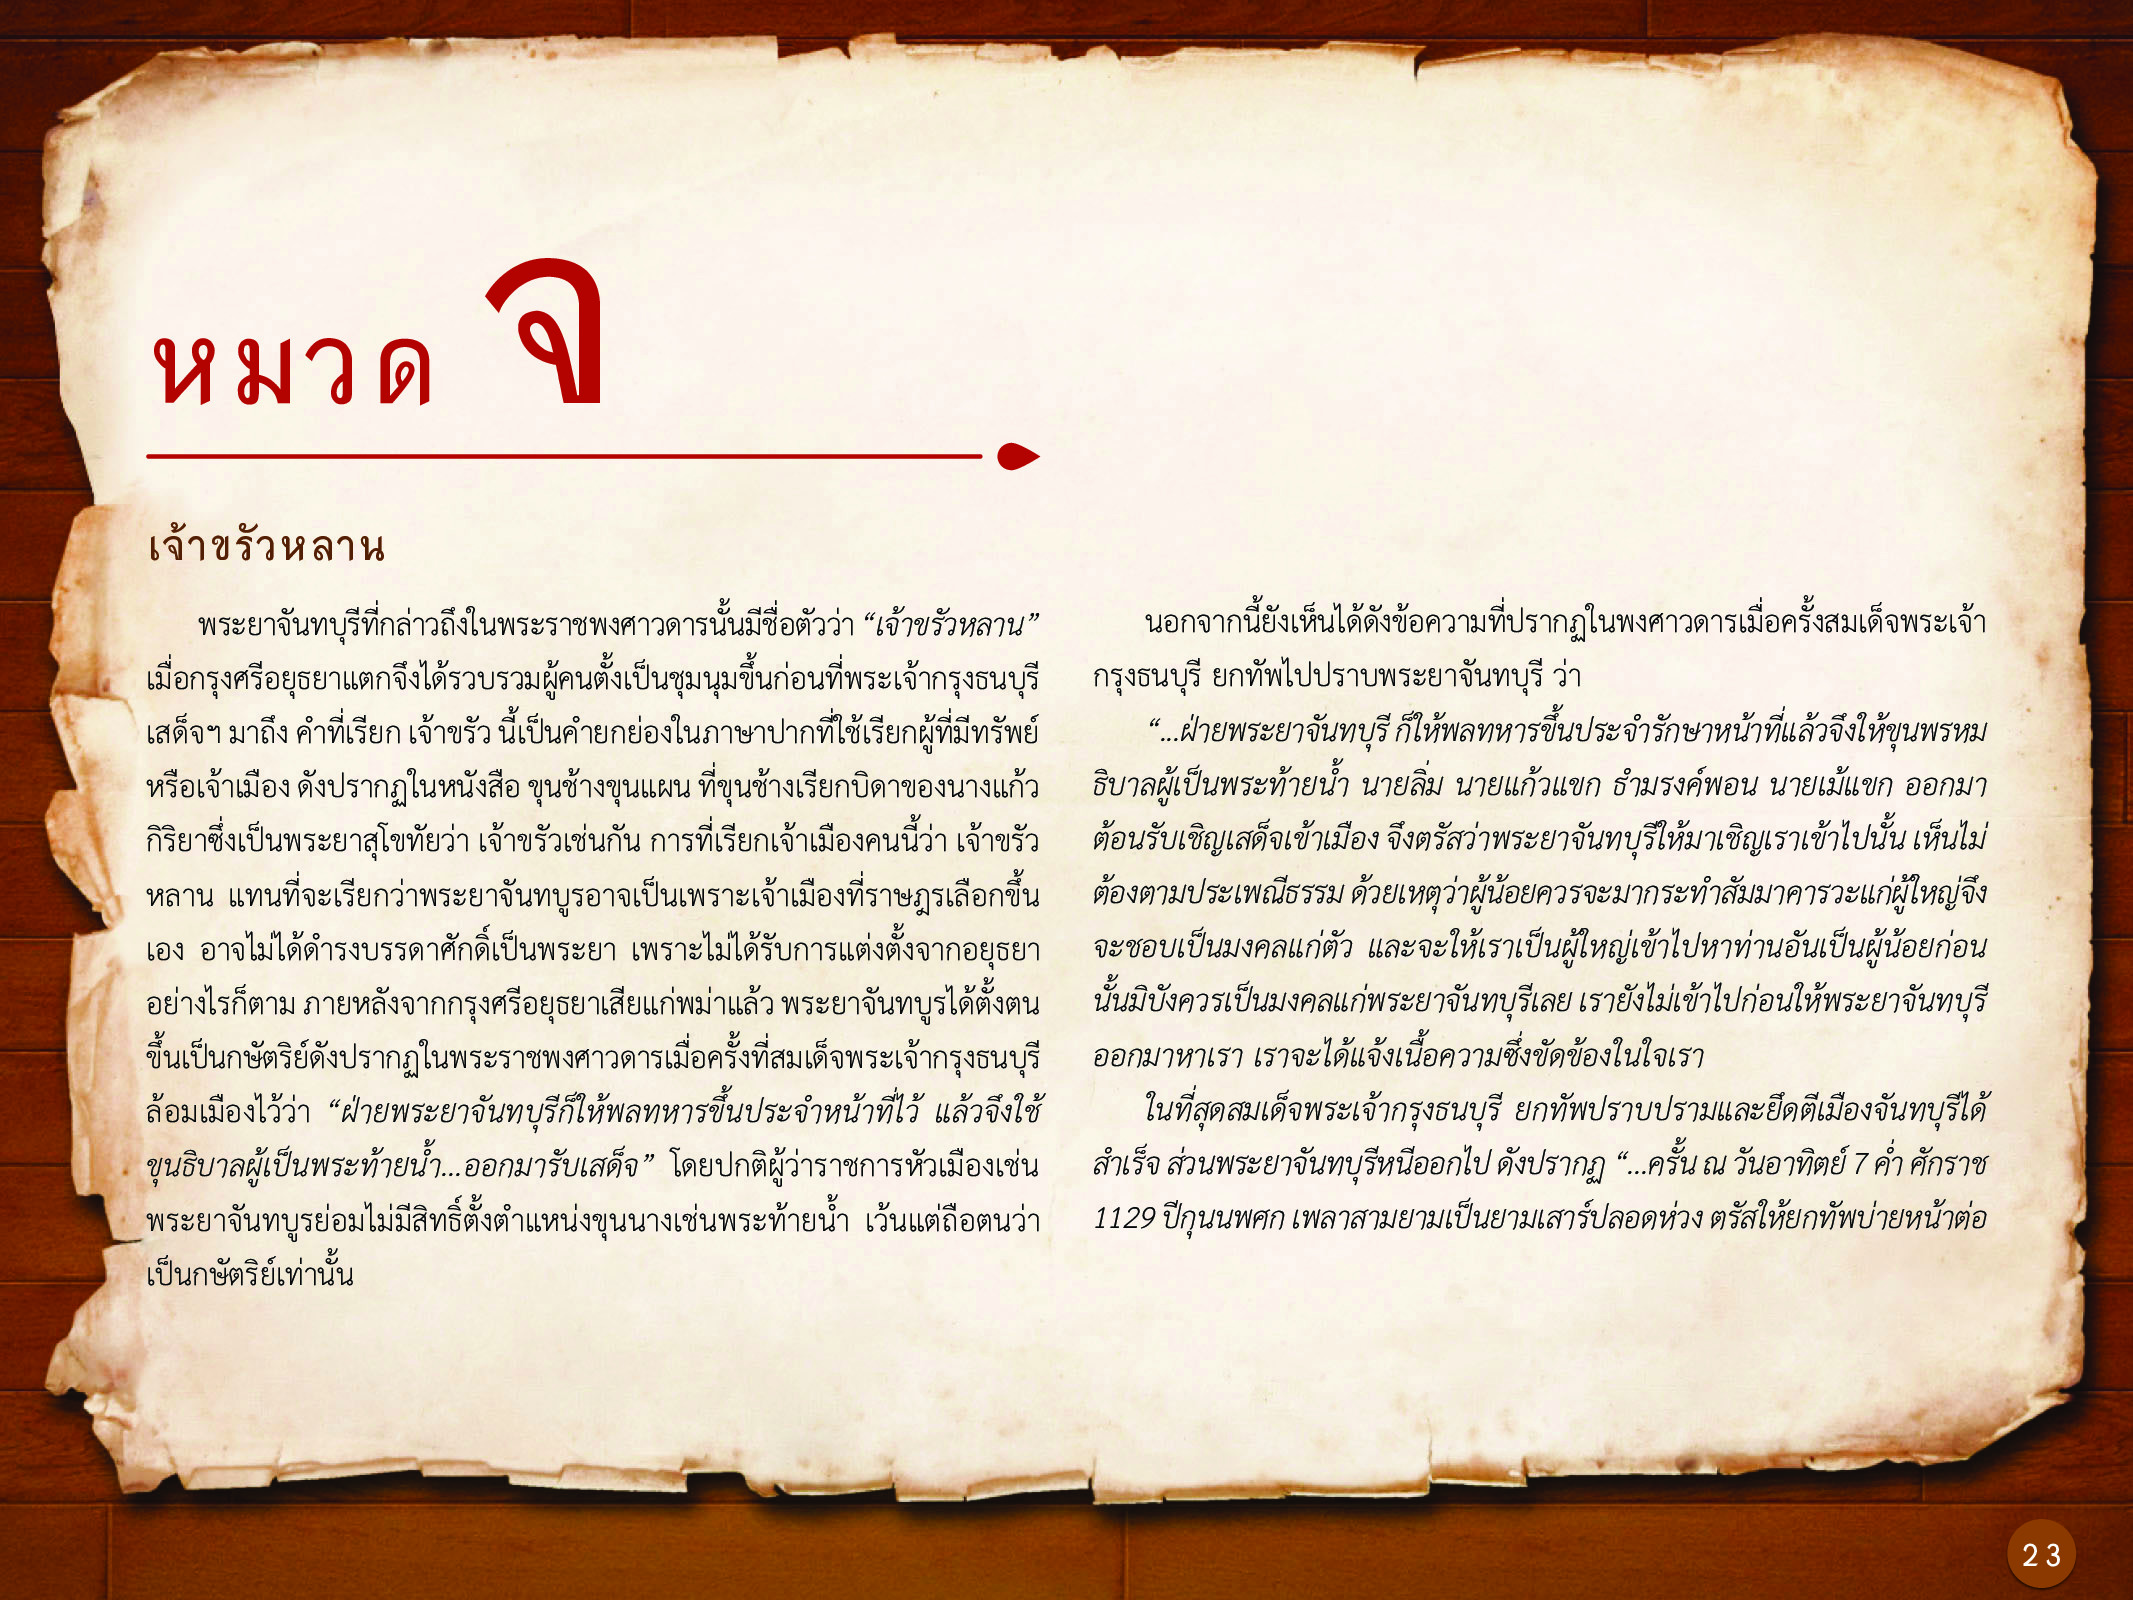 ประวัติศาสตร์กรุงธนบุรี ./images/history_dhonburi/23.jpg